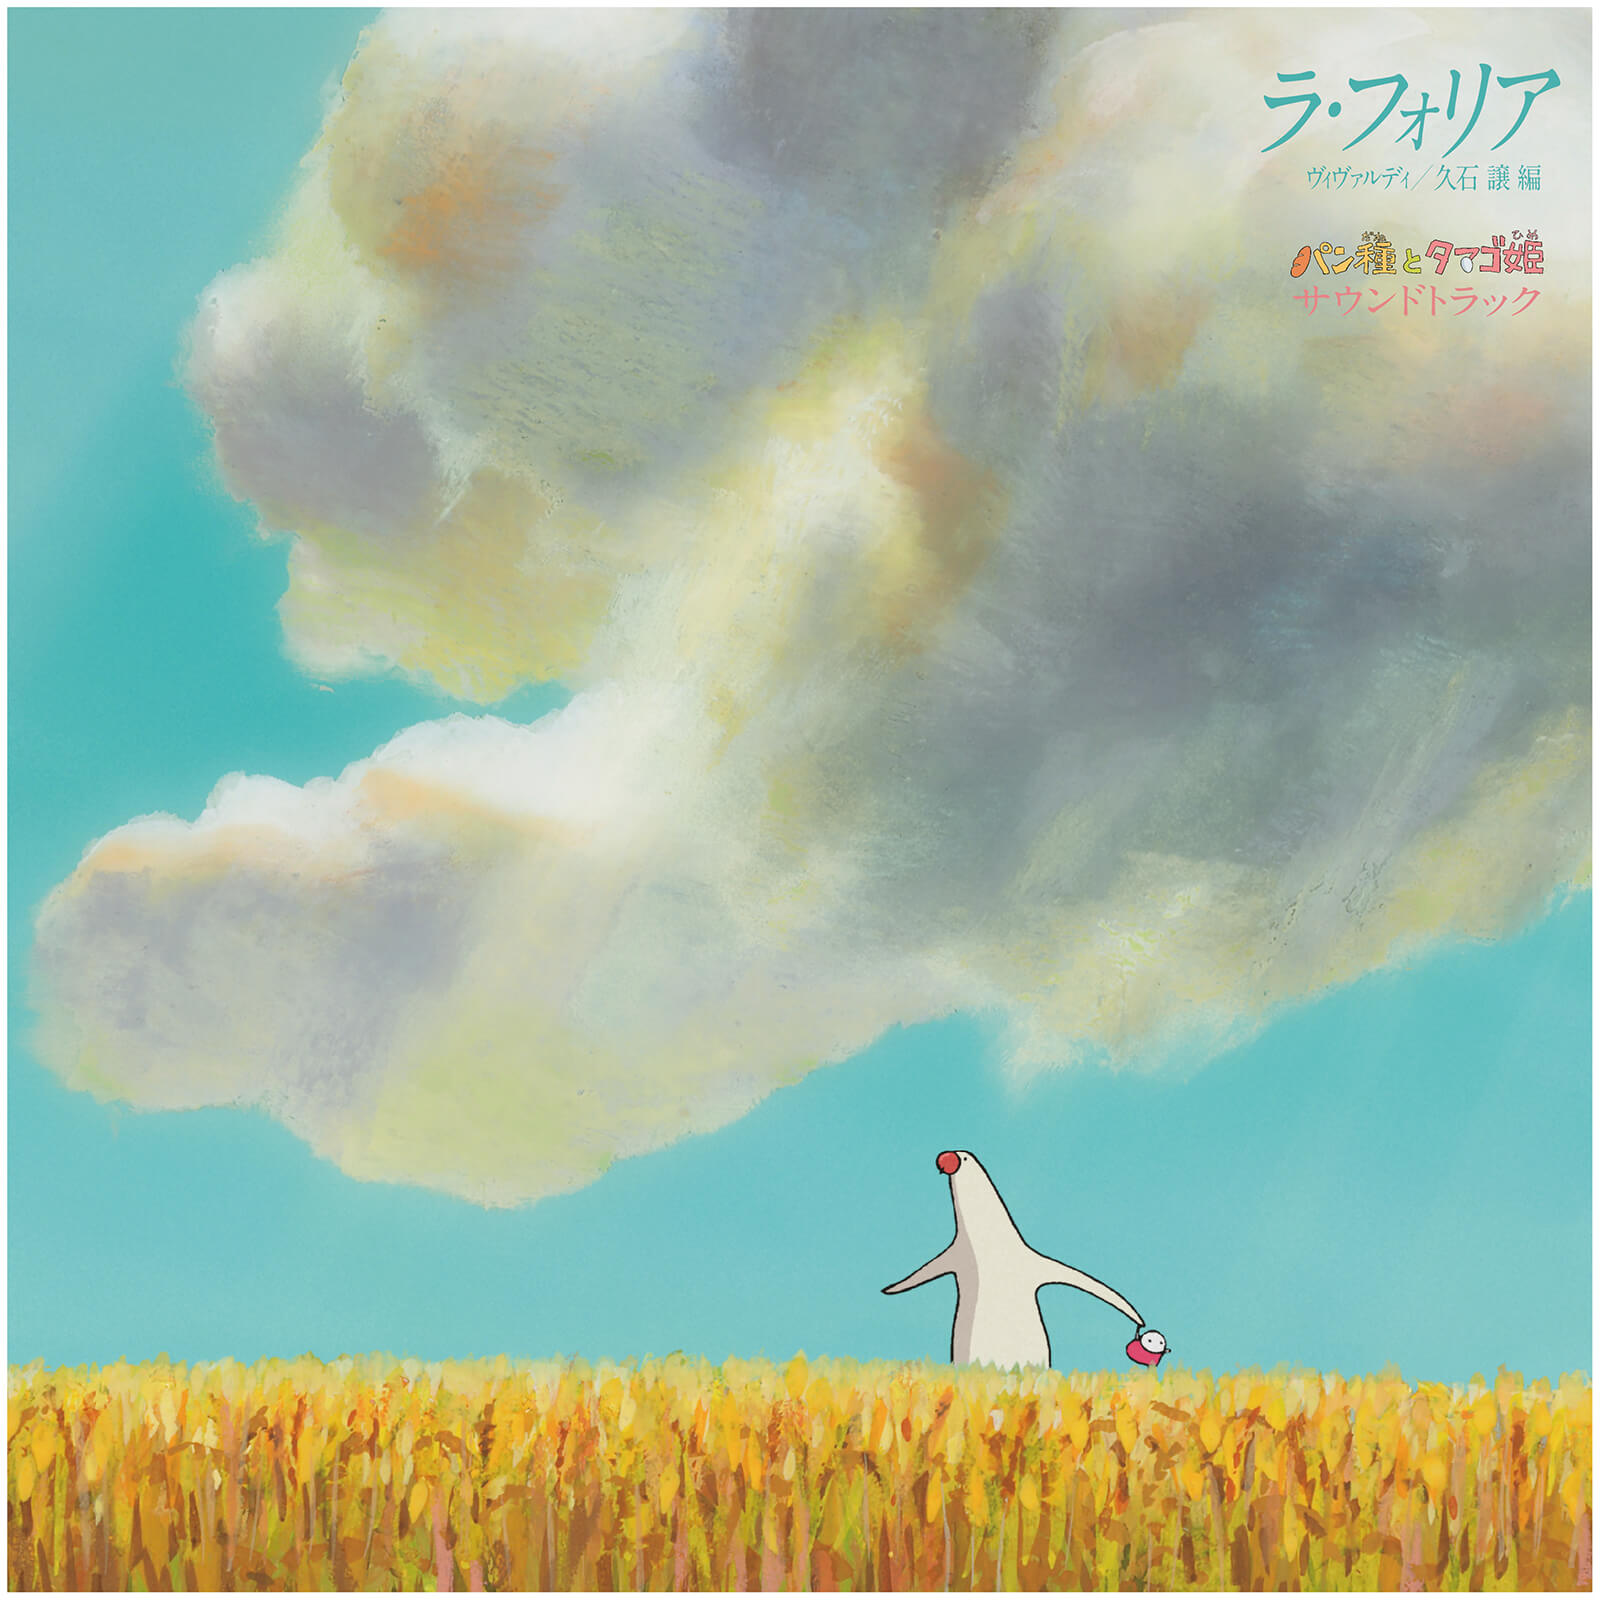 Studio Ghibli La Folia Vivaldi  Pantai to Tamago Hime  Soundtrack Vinyl